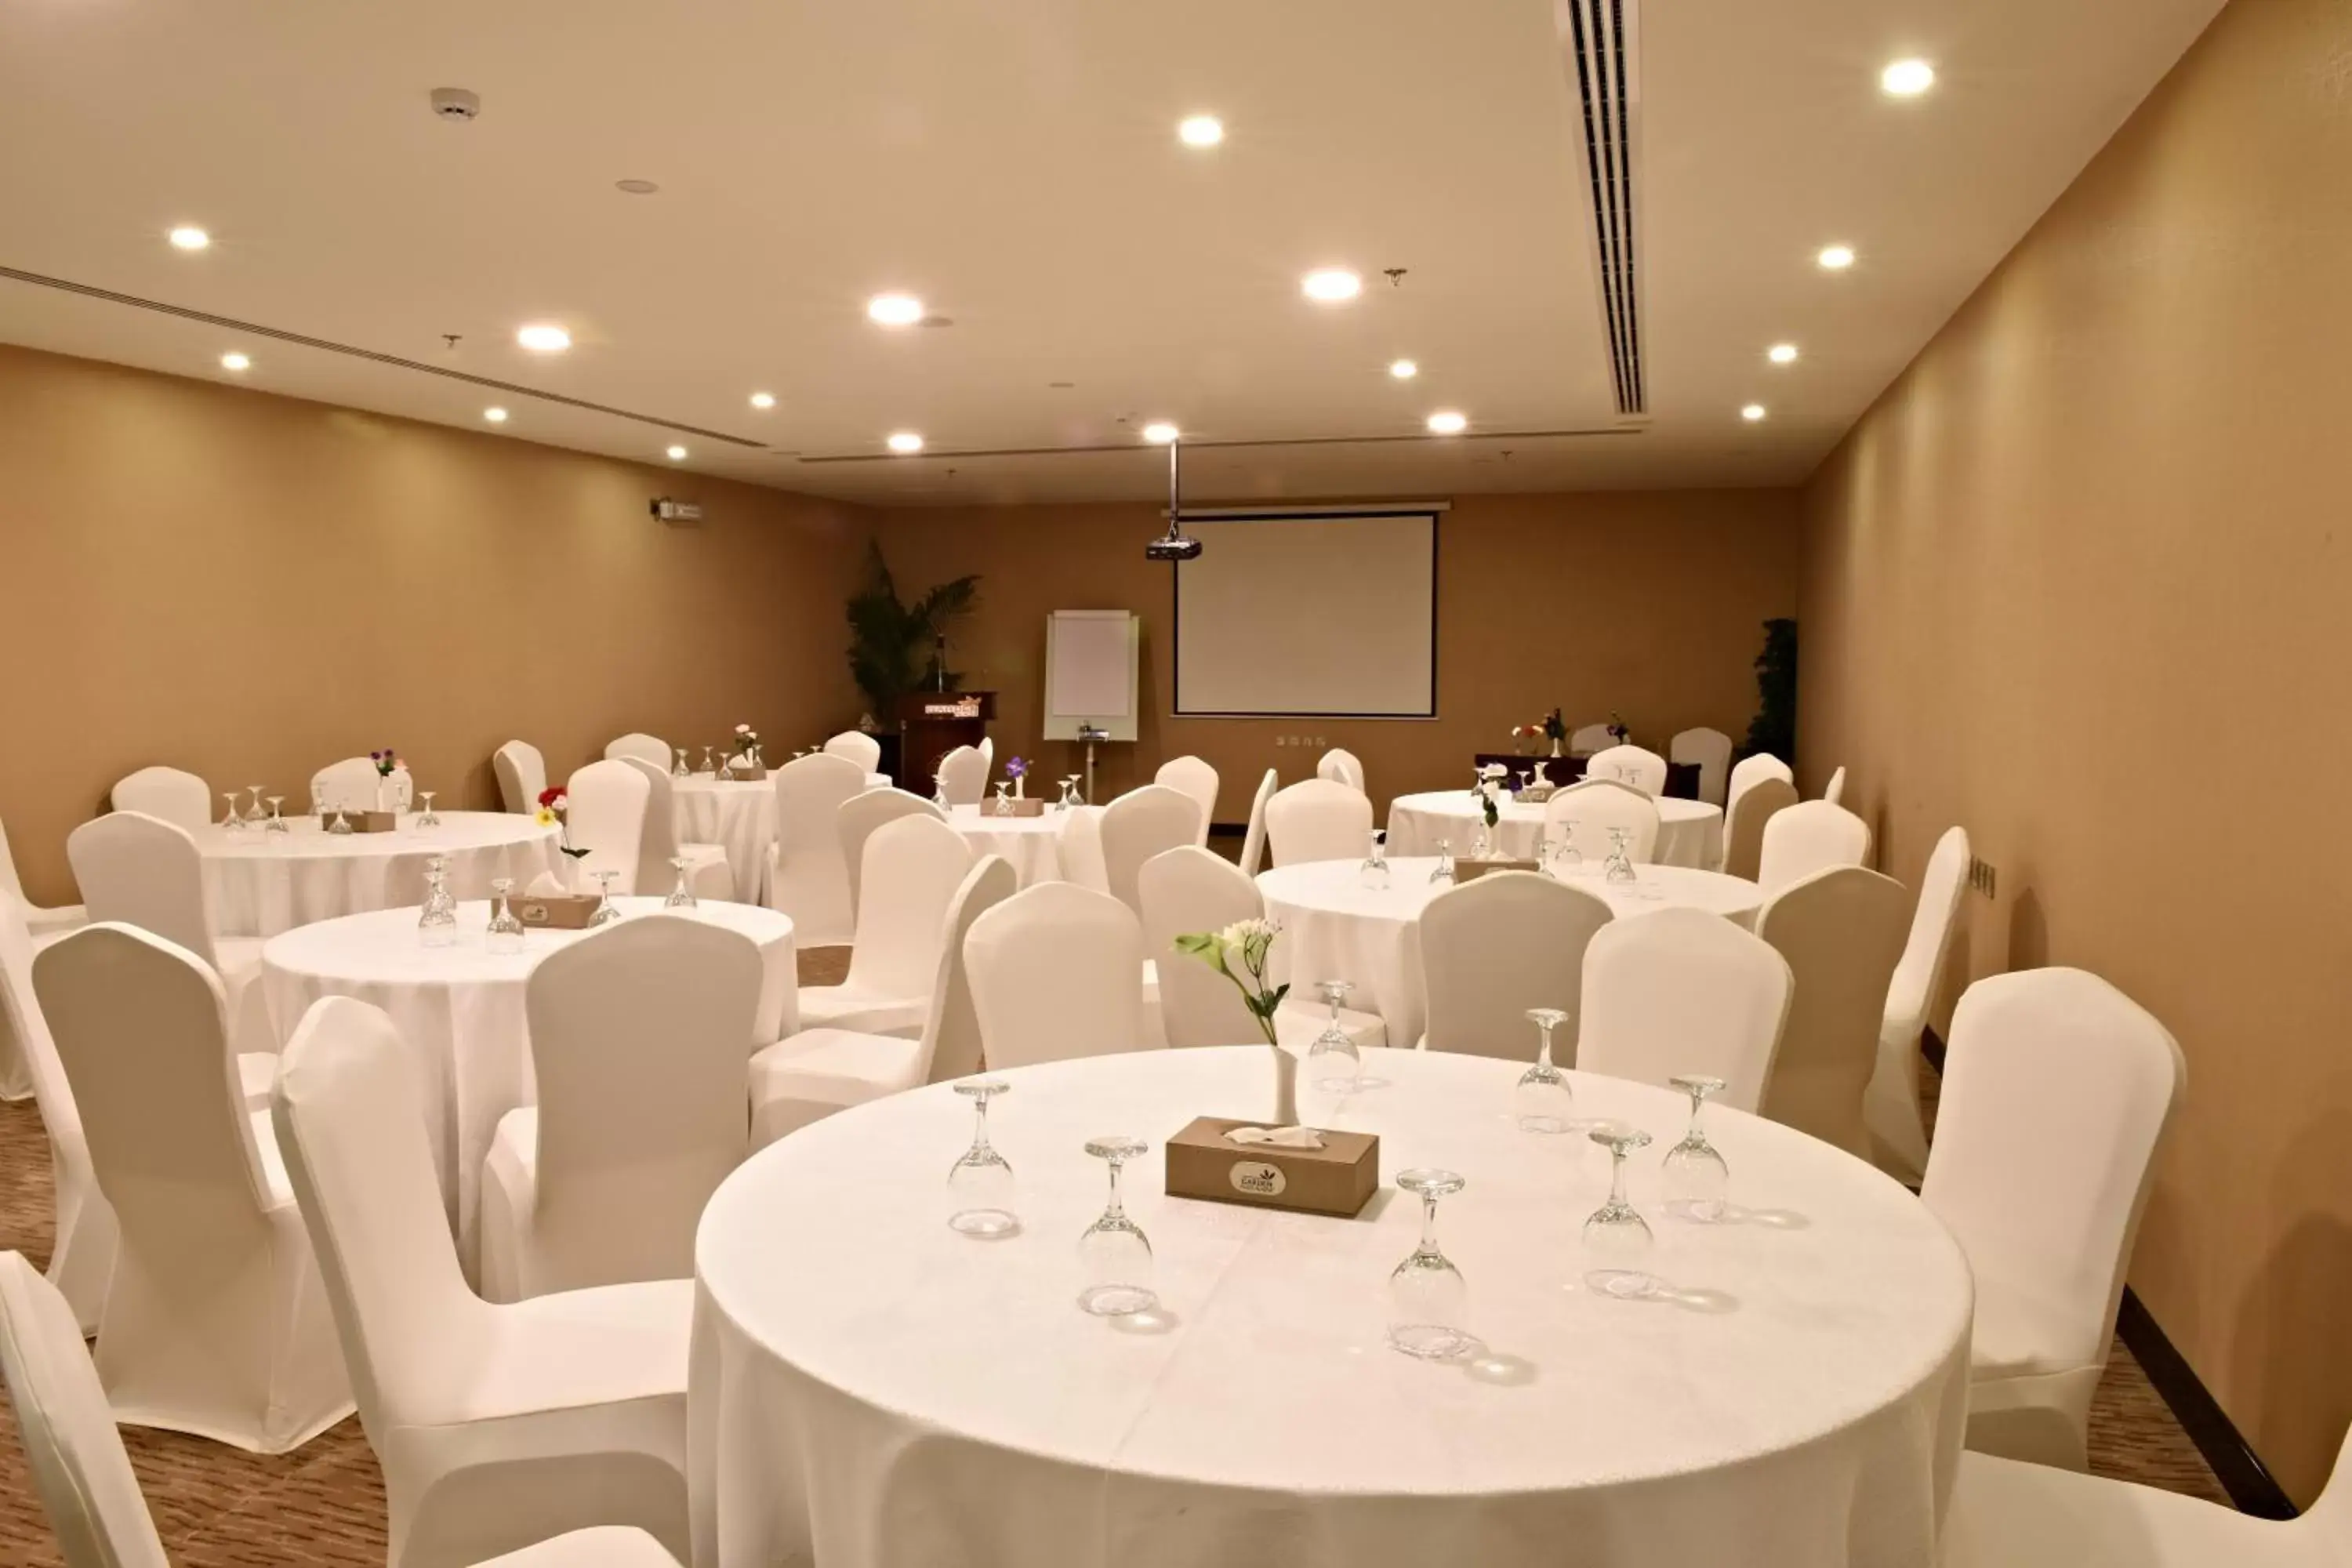 Banquet/Function facilities, Banquet Facilities in Garden Plaza Hotel